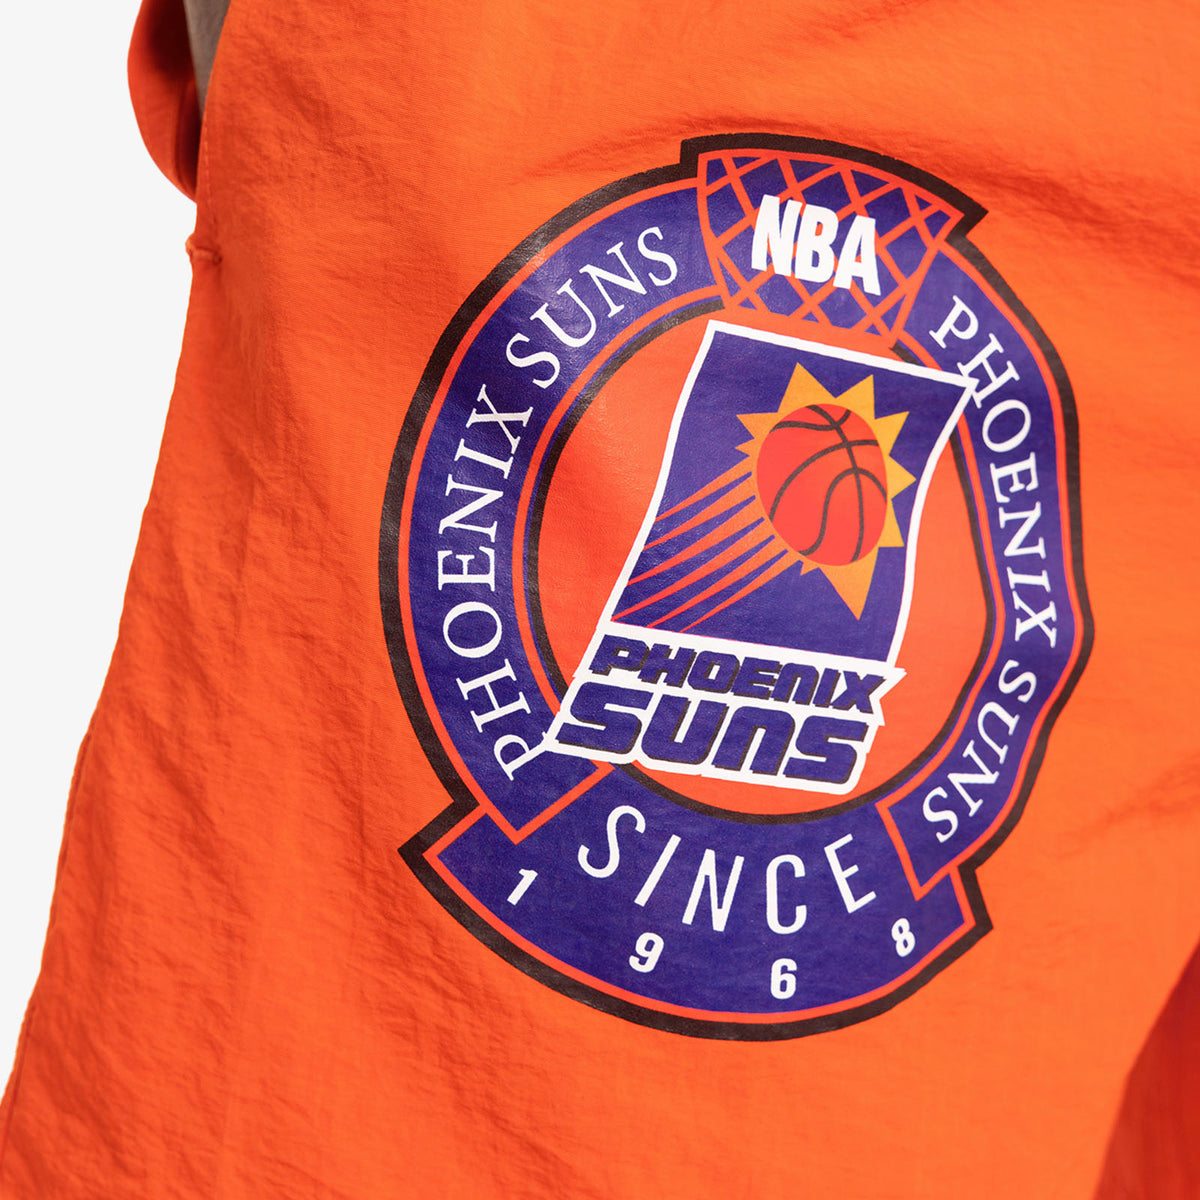 Phoenix Suns Established 1968 Shorts - Orange